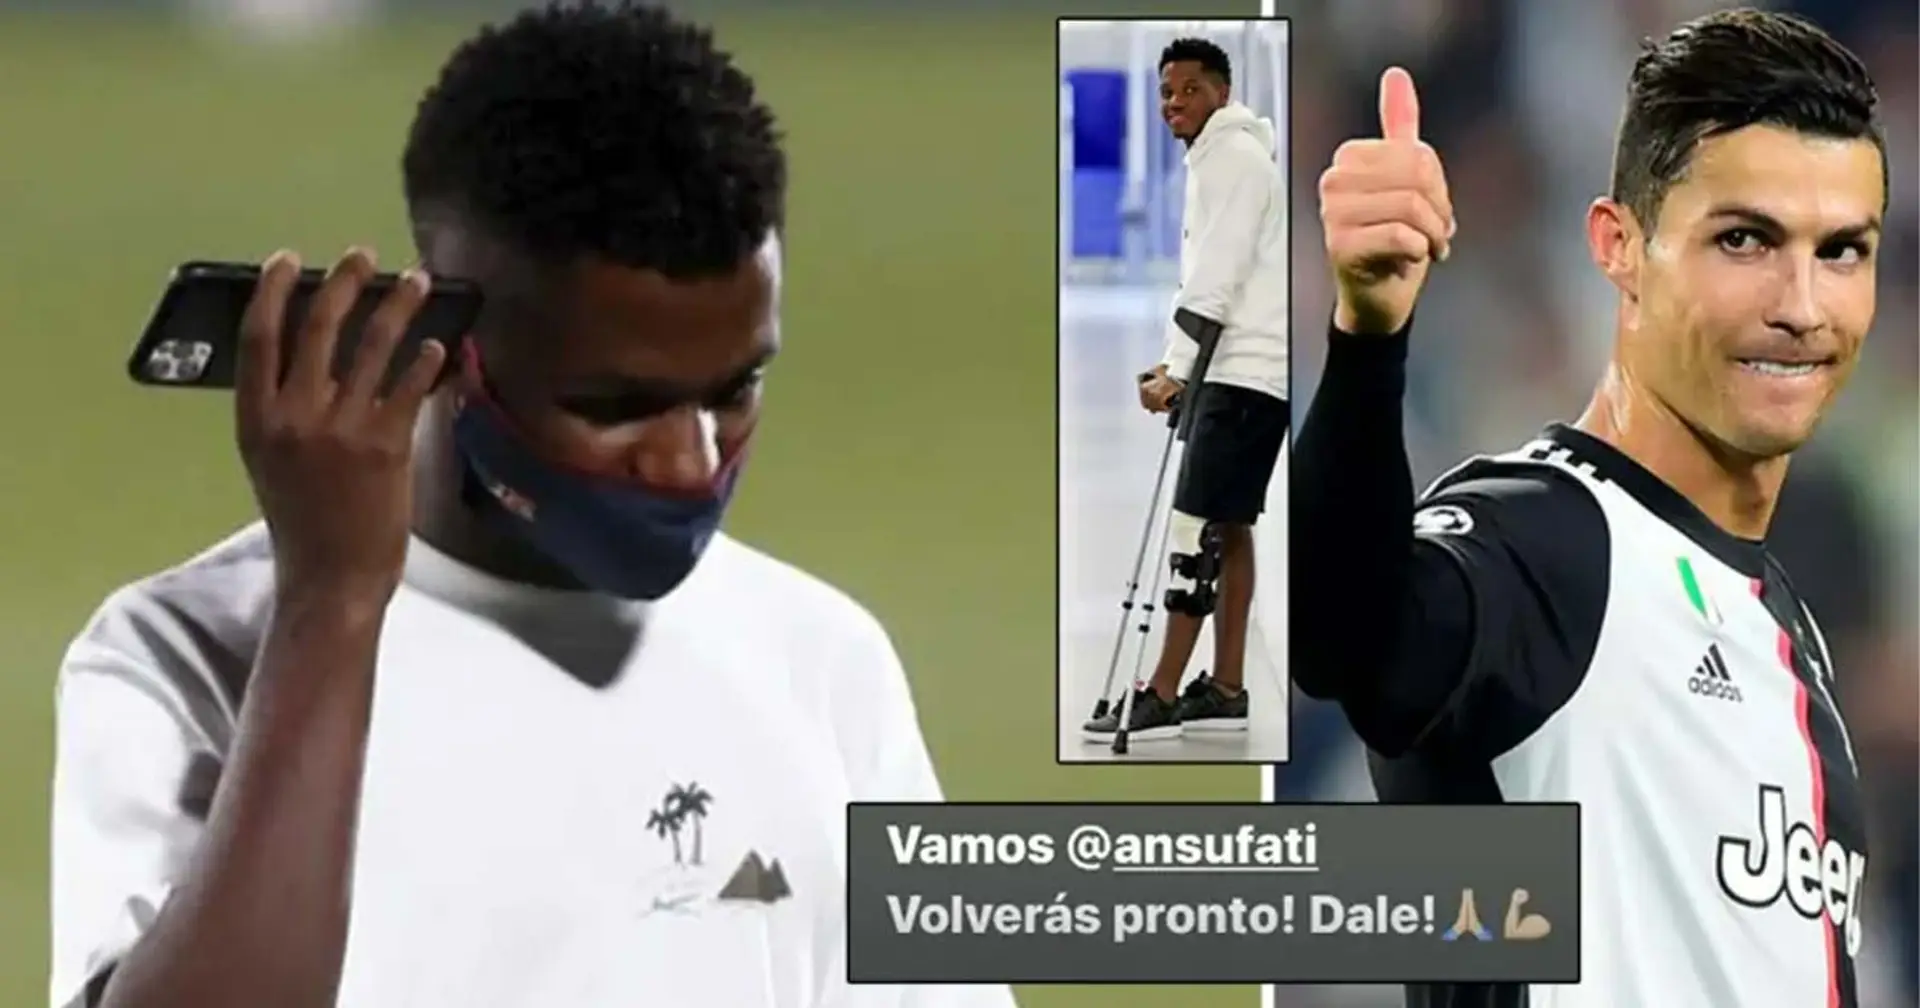 'Tornerai presto! Forza! ': Cristiano Ronaldo vicino ad Ansu Fati in vista dell'intervento chirurgico